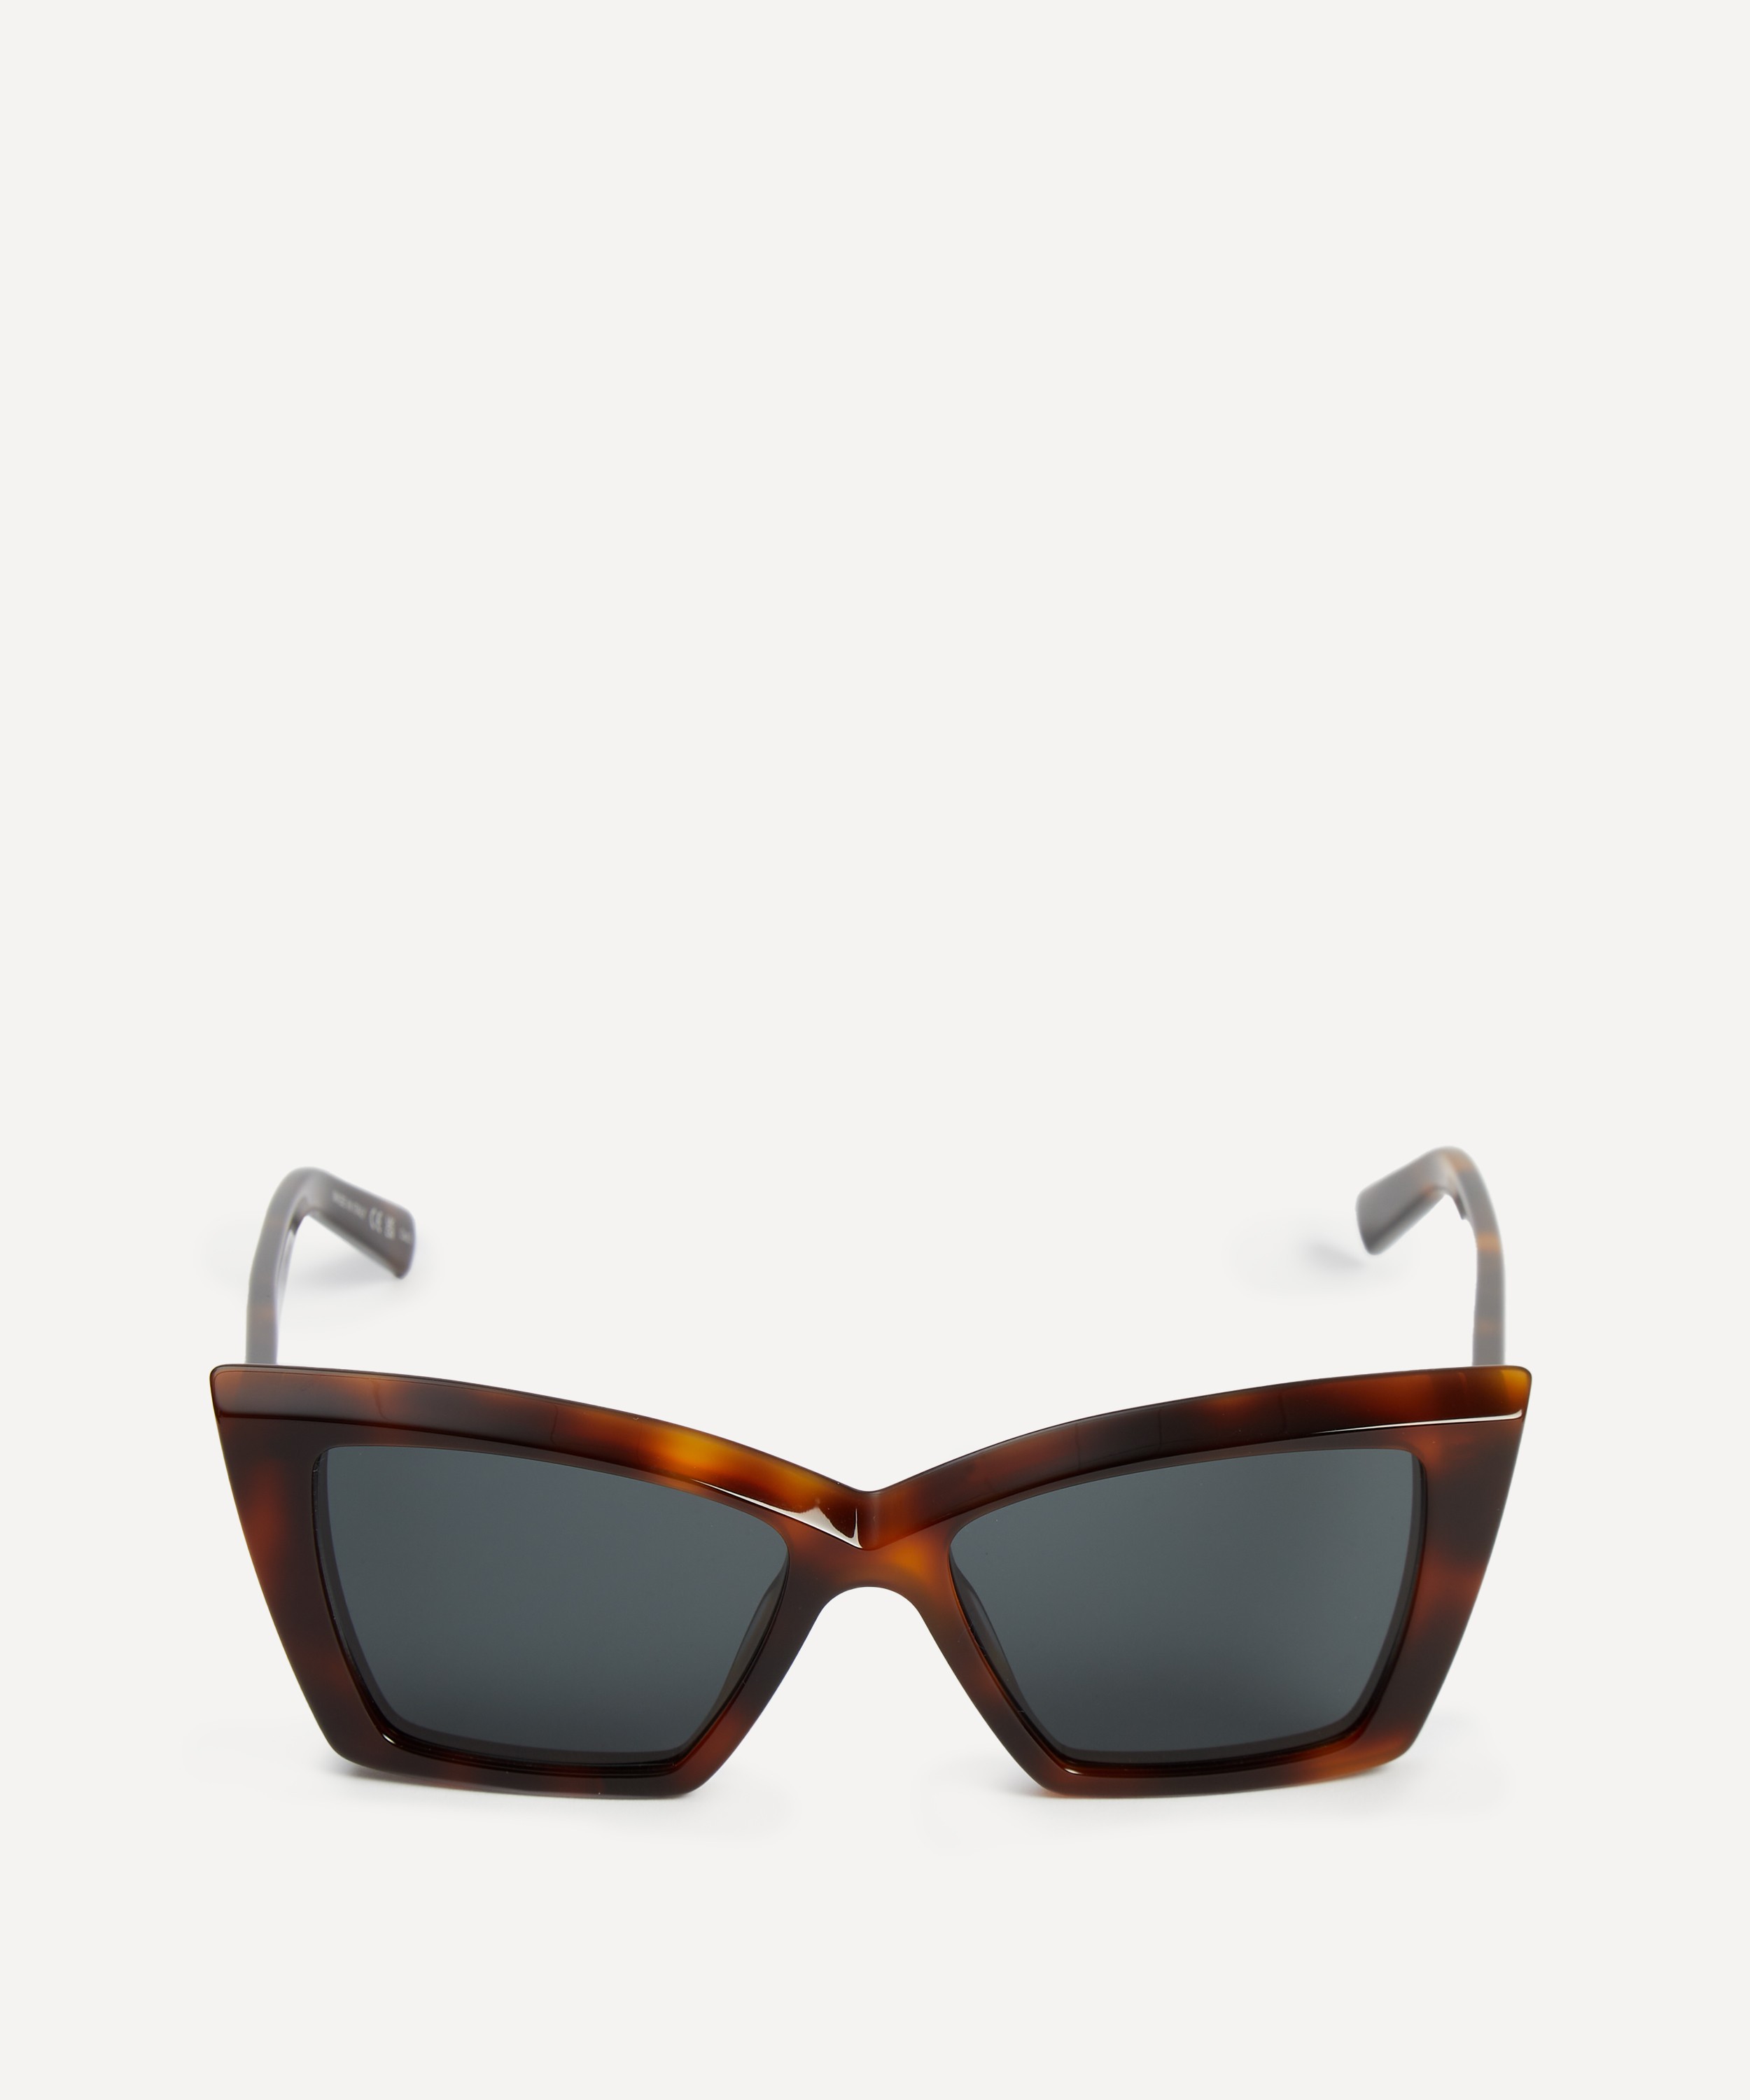 Saint Laurent - Butterfly Sunglasses